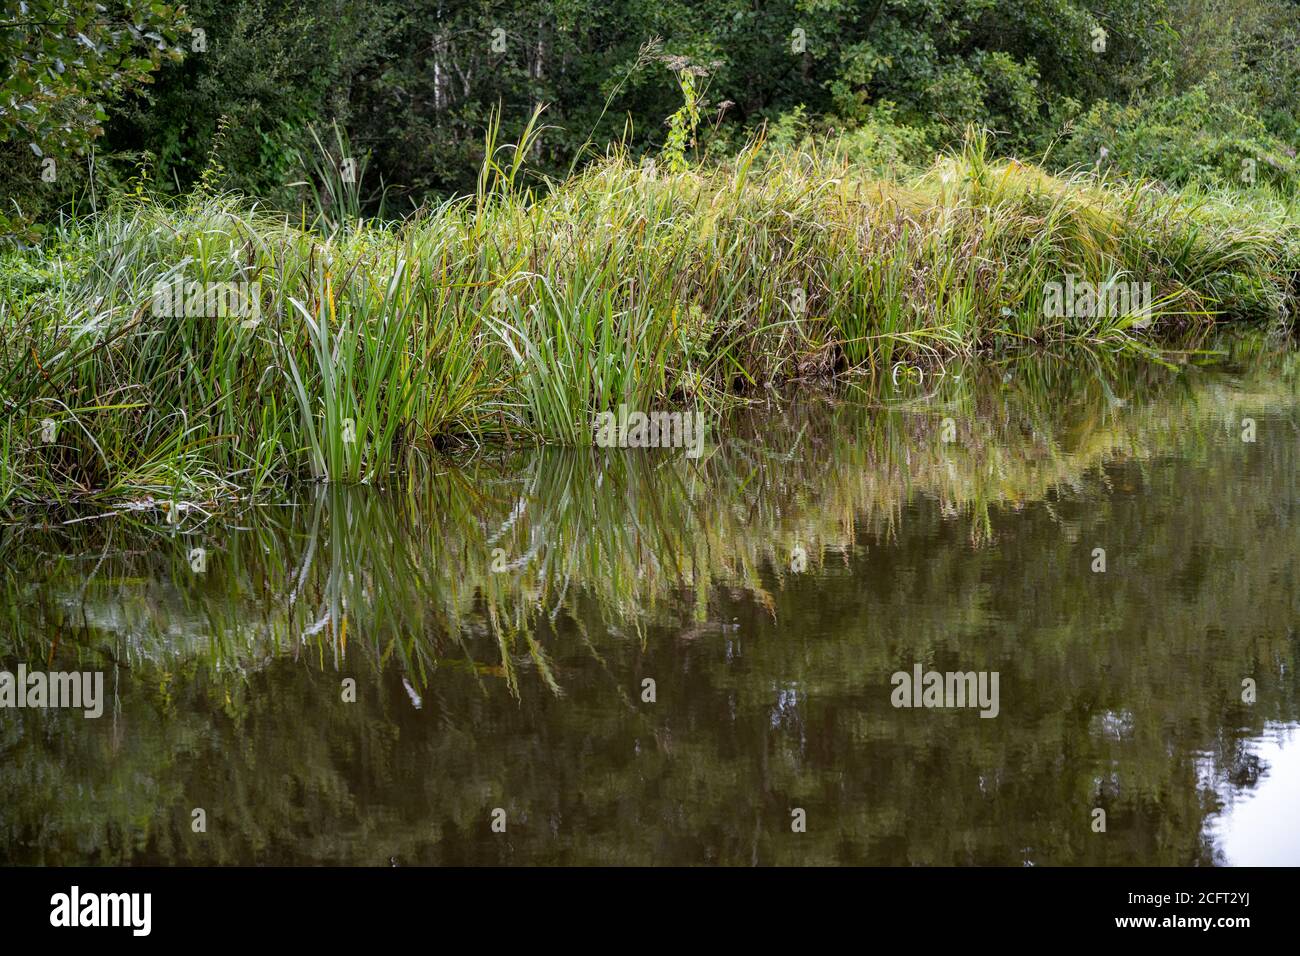 Bereich von Grasklumpen neben einem Kanal im Wasser reflektiert. Stockfoto